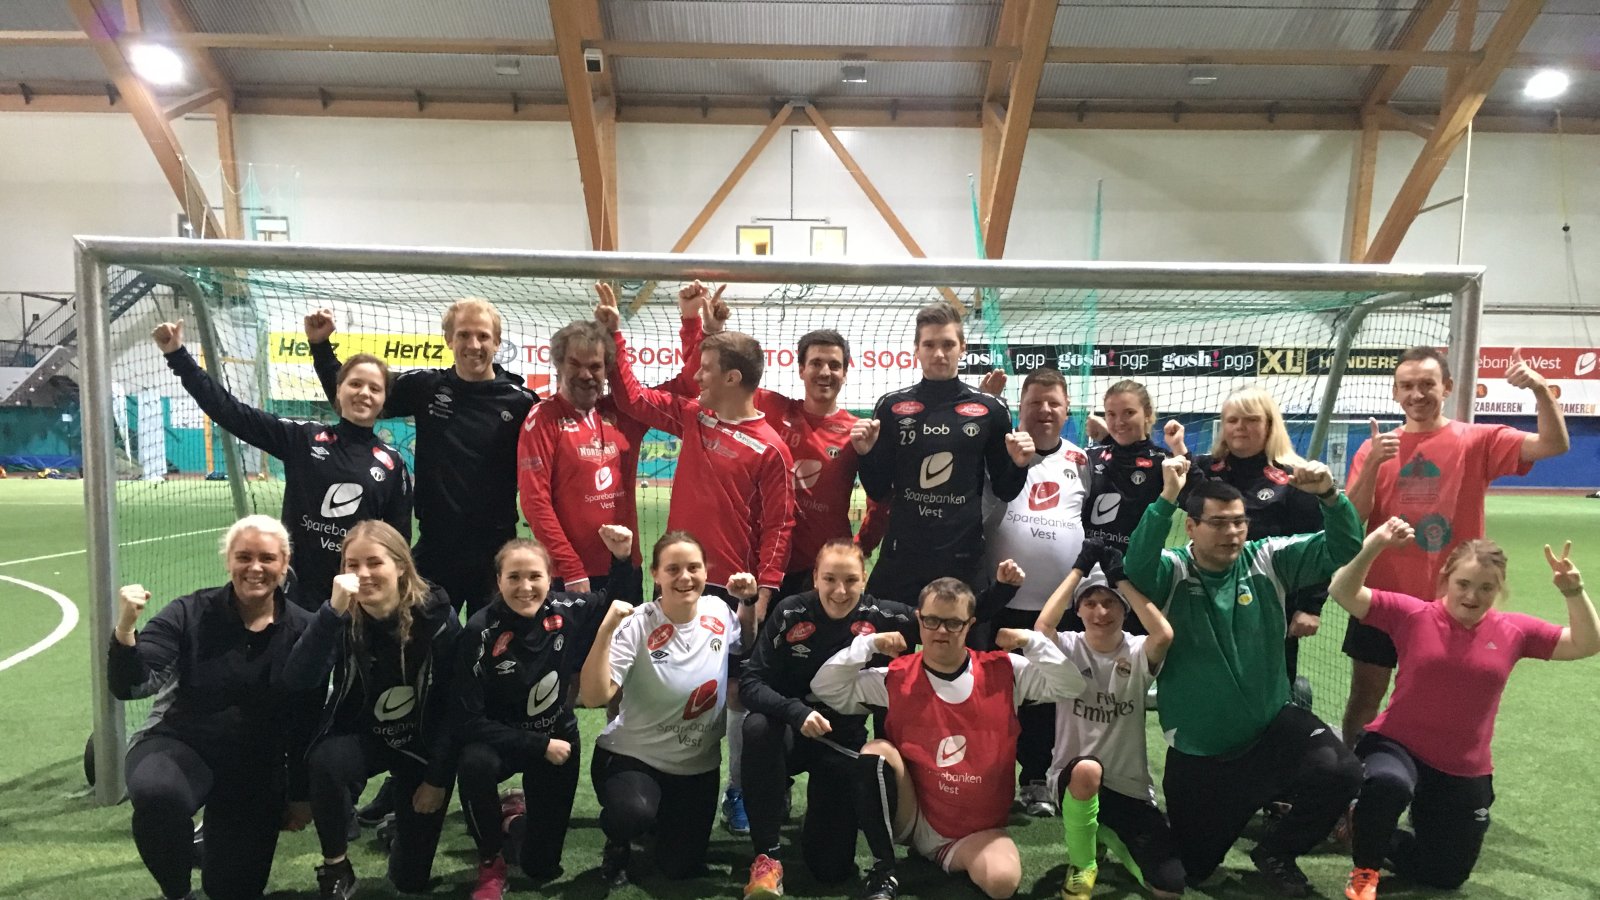 Sogndal United